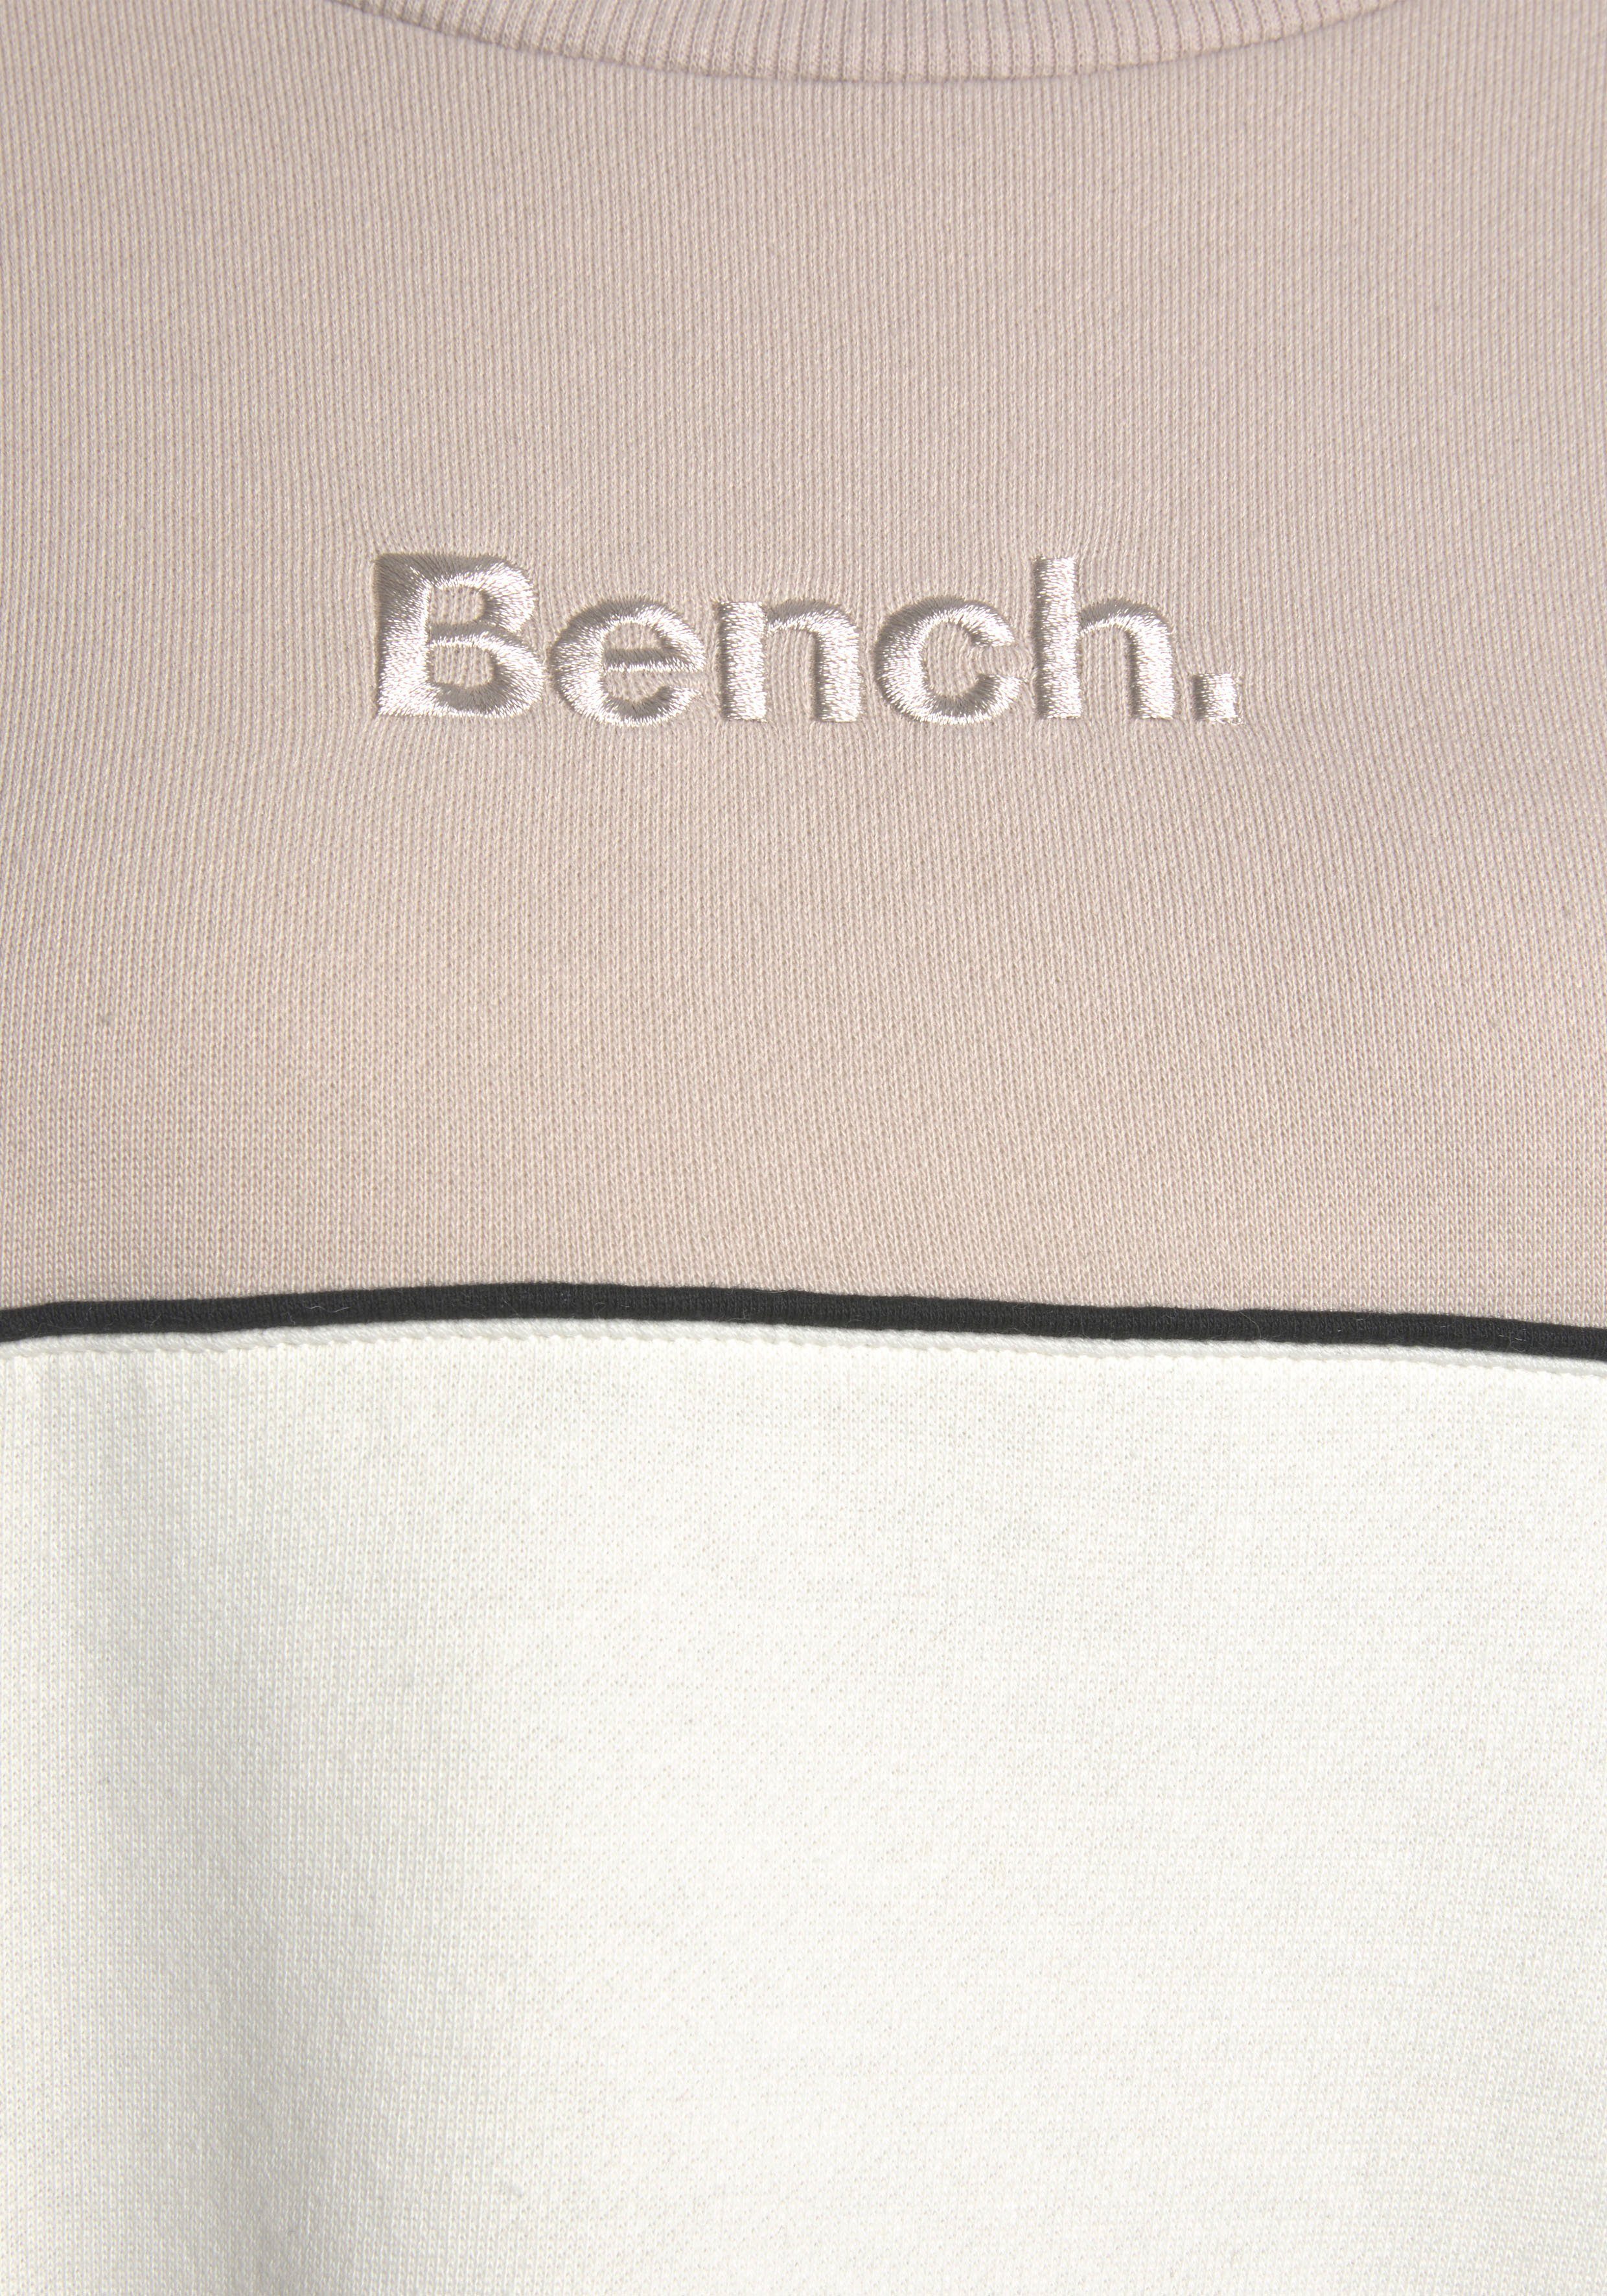 Bench. Sweatkleid in zwei Farben hellbeige-hellbraun mit Logostickerei